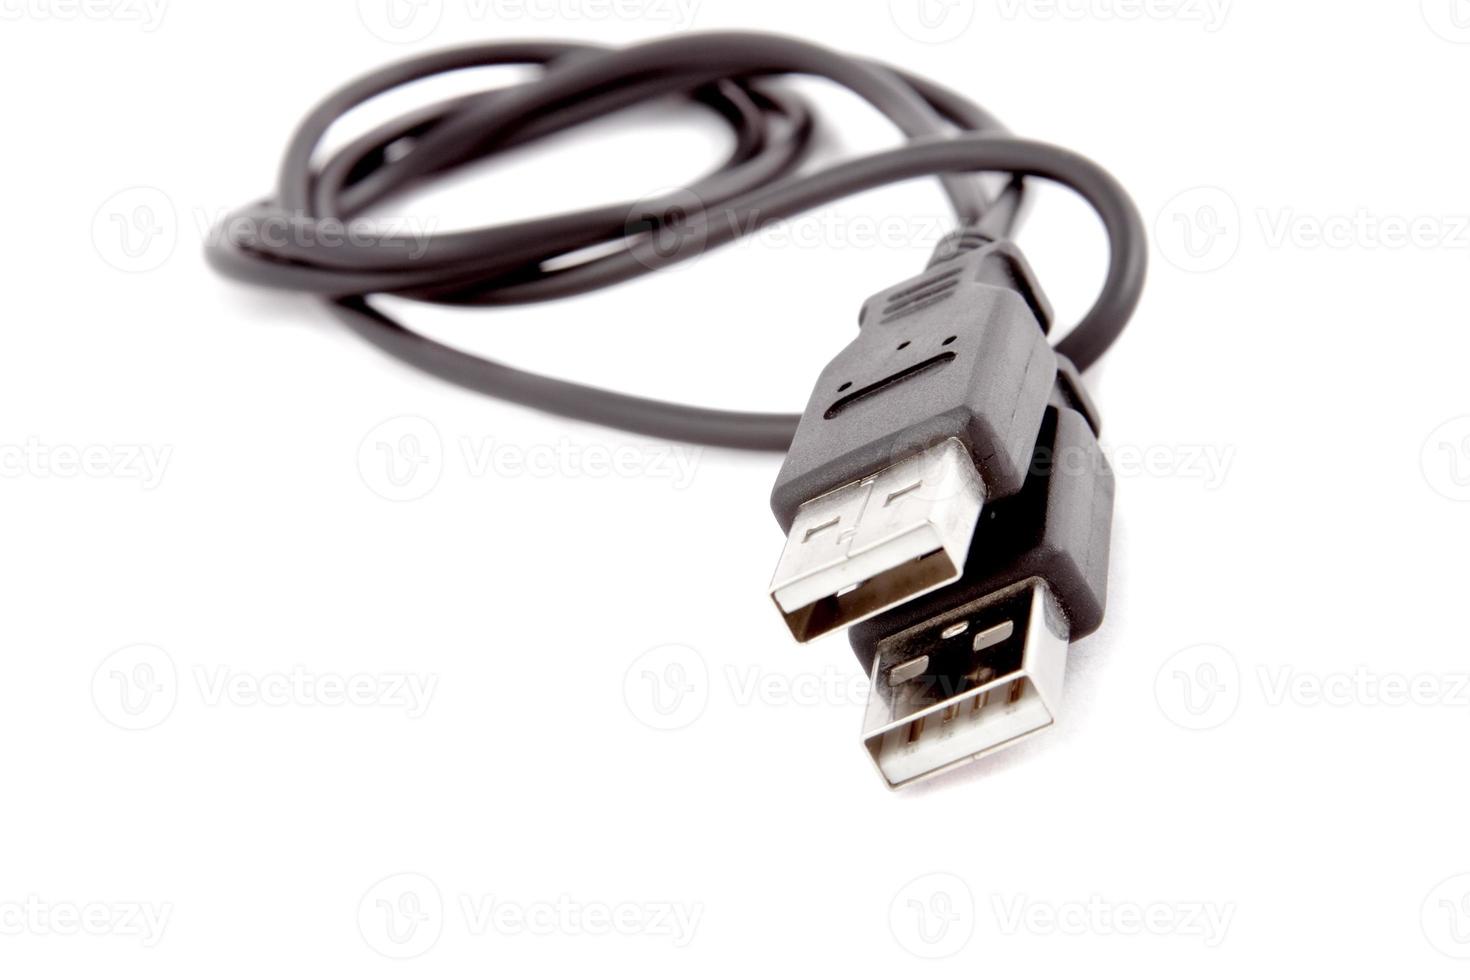 USB-Kabel auf Weiß Hintergrund foto